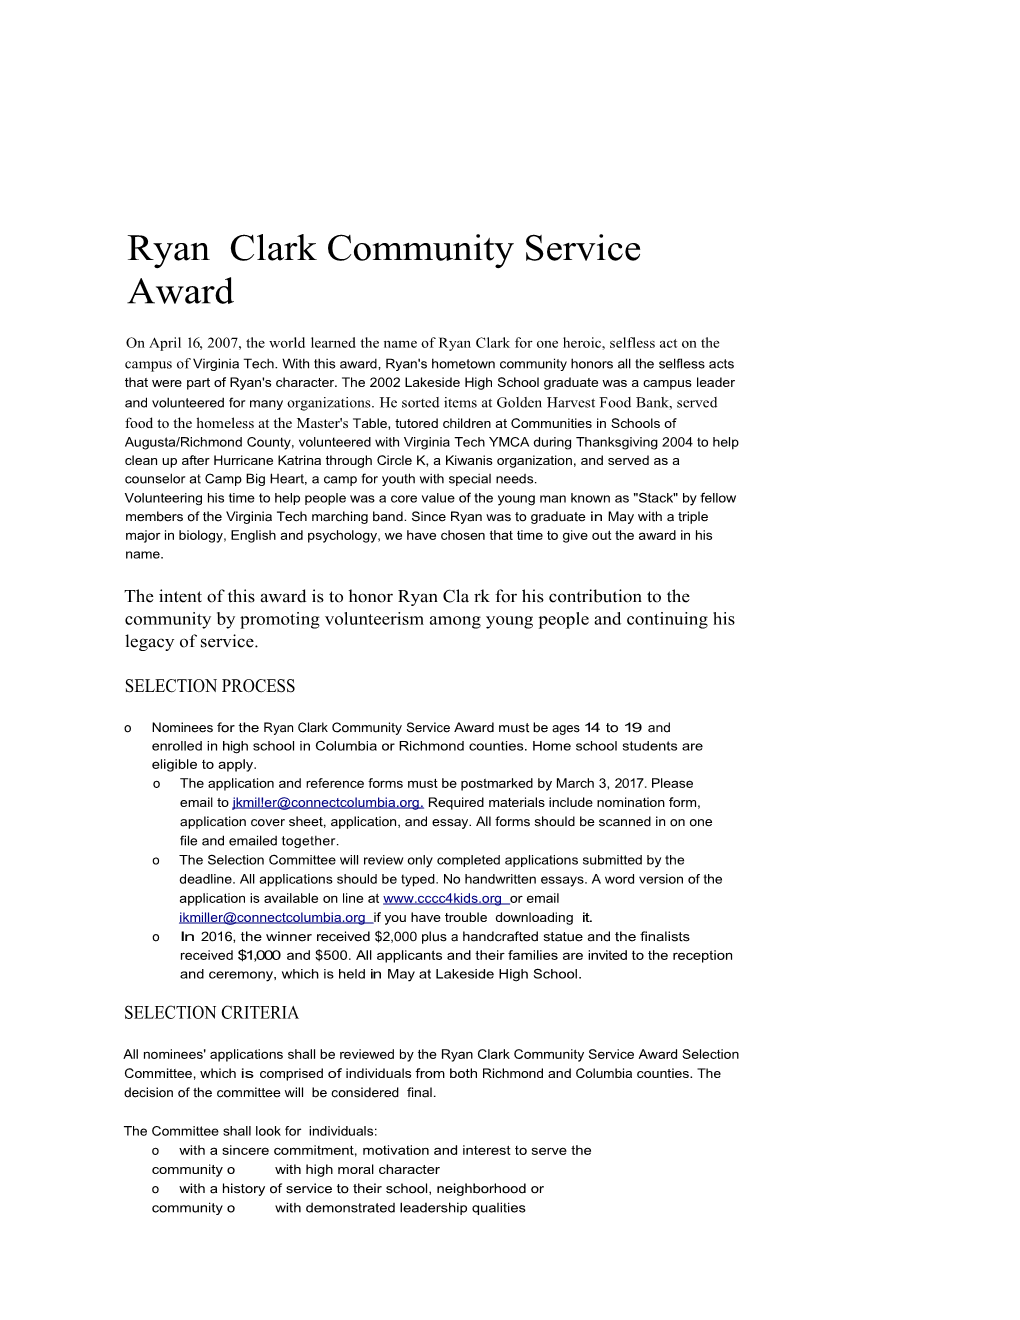 Ryan Clark Community Service Award